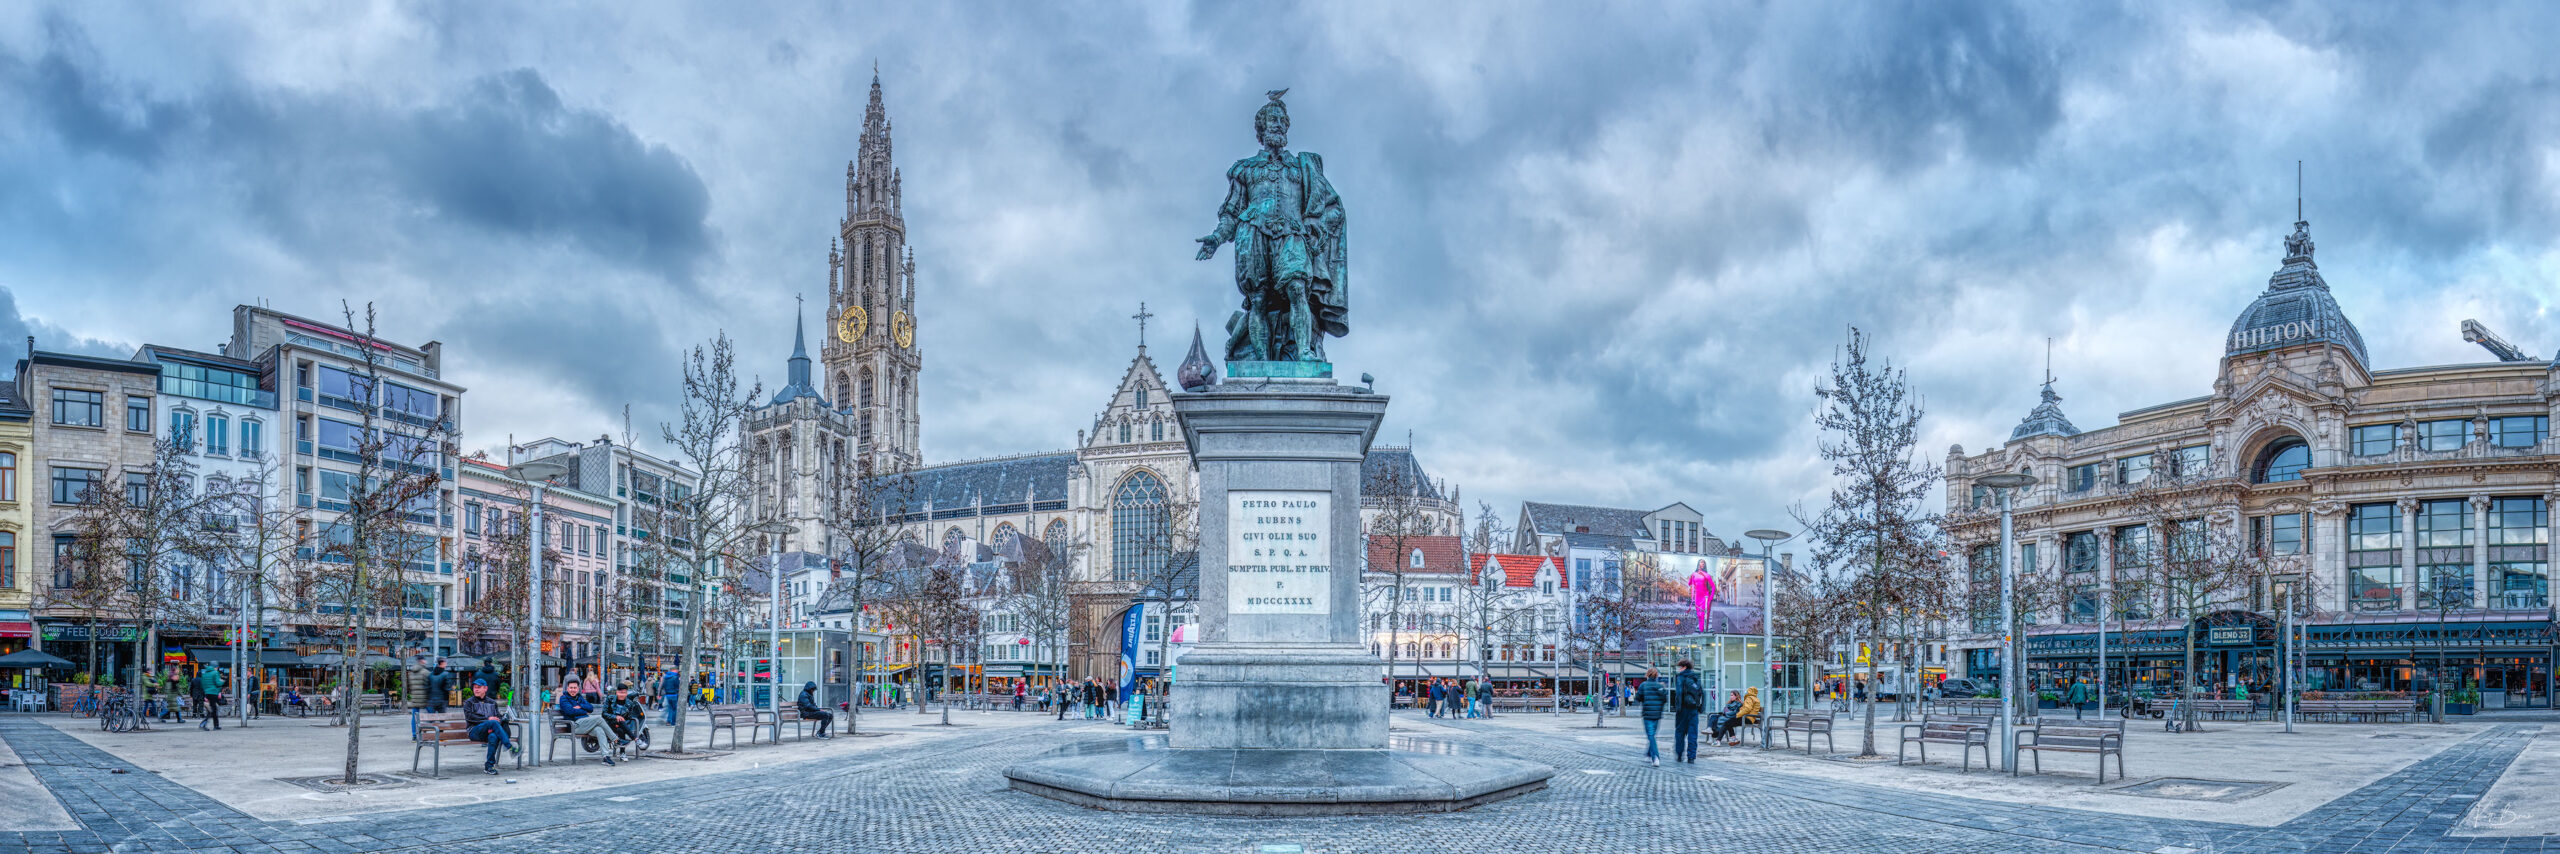 Antwerp panoramic view on Rubens